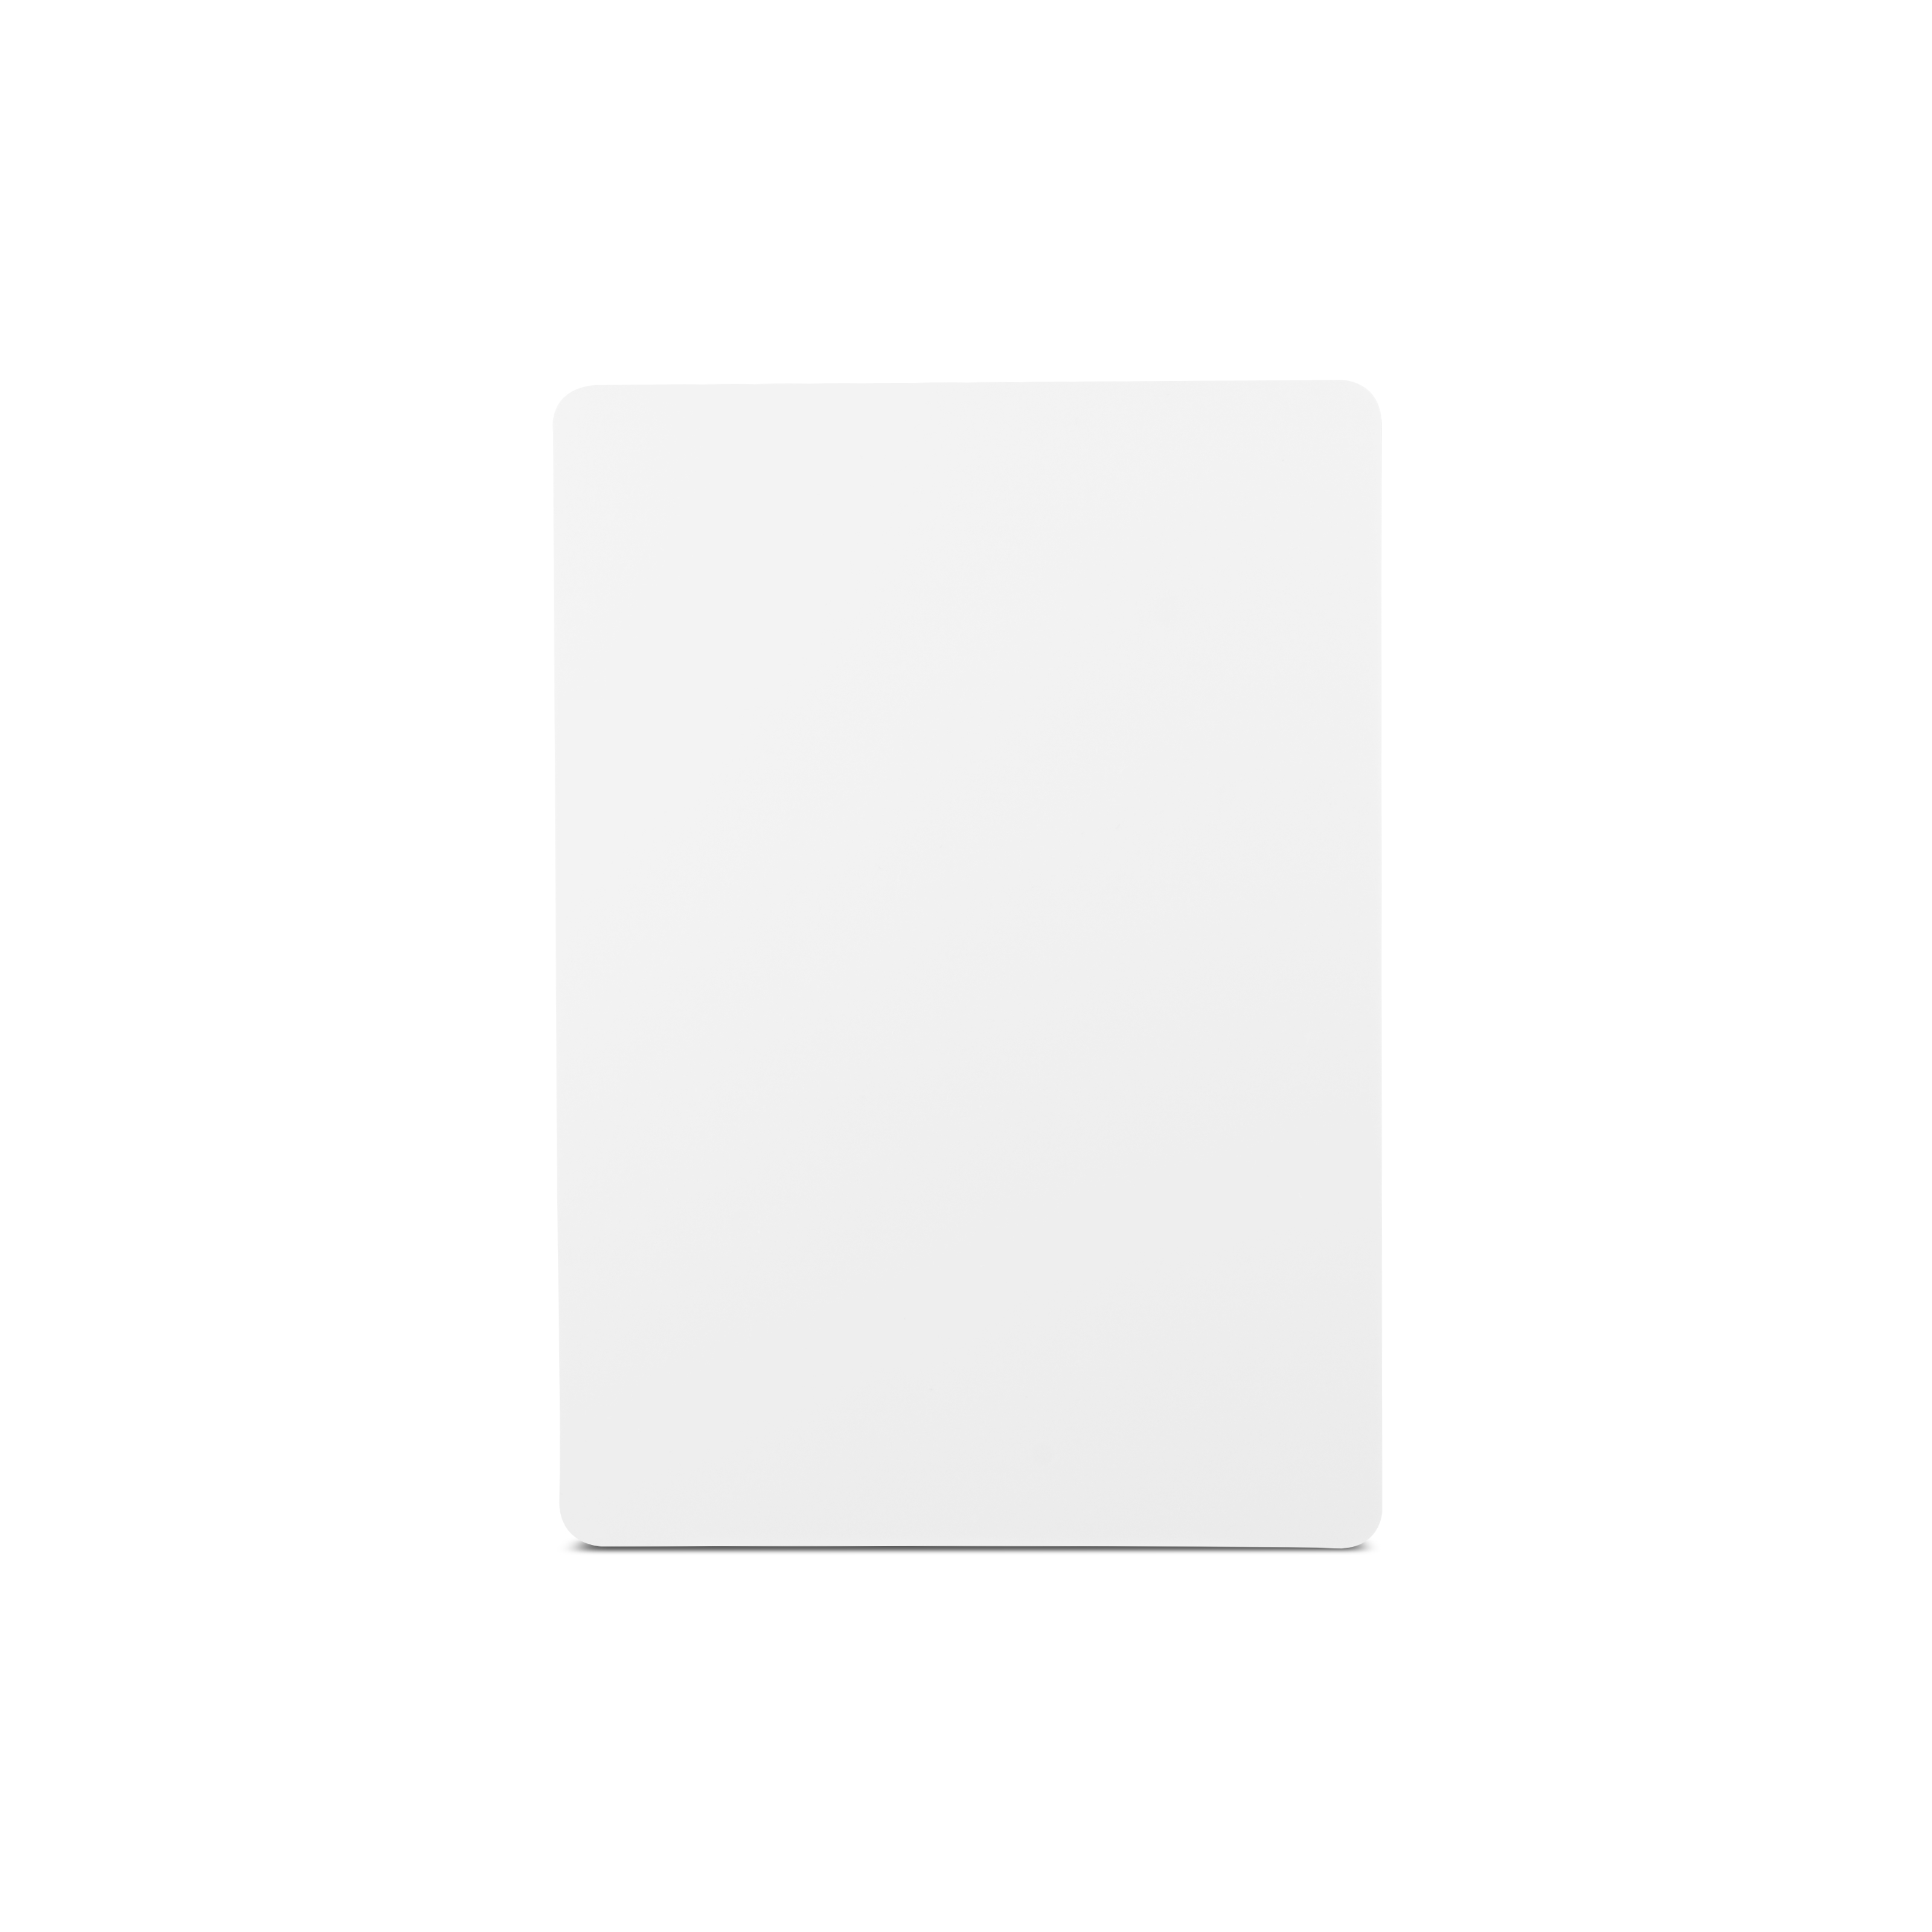 NFC Schild PETG einseitig bedruckt - A6 - NTAG213 - 180 Byte - weiß glänzend